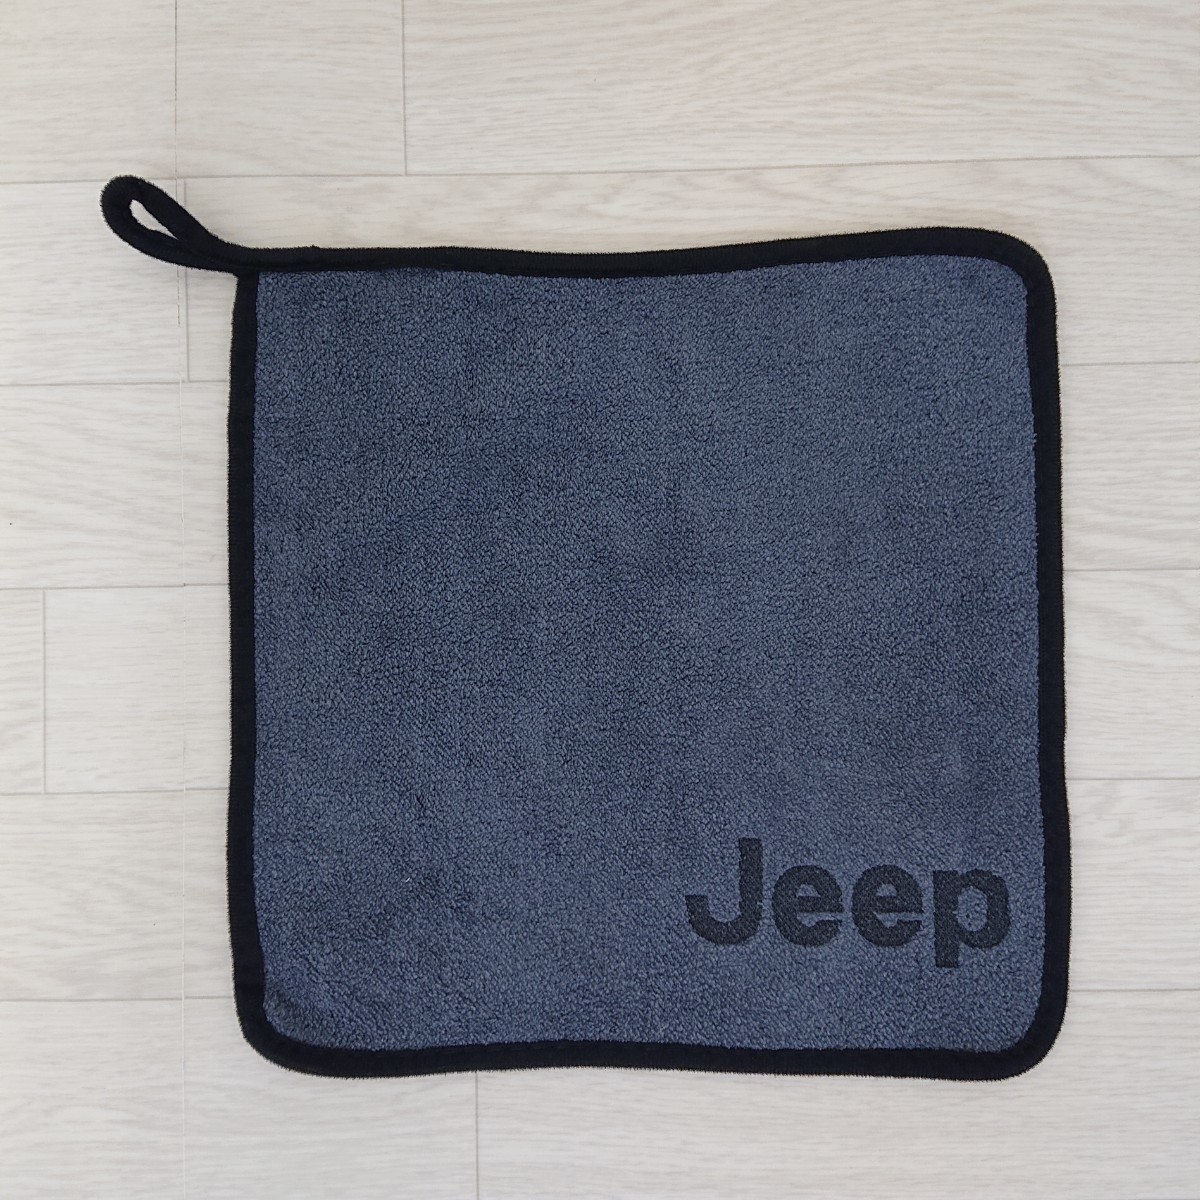 マイクロ ファイバー 車用 タオル ジープ 新品 送料無料 JEEP スズキ jeep 掃除 洗車